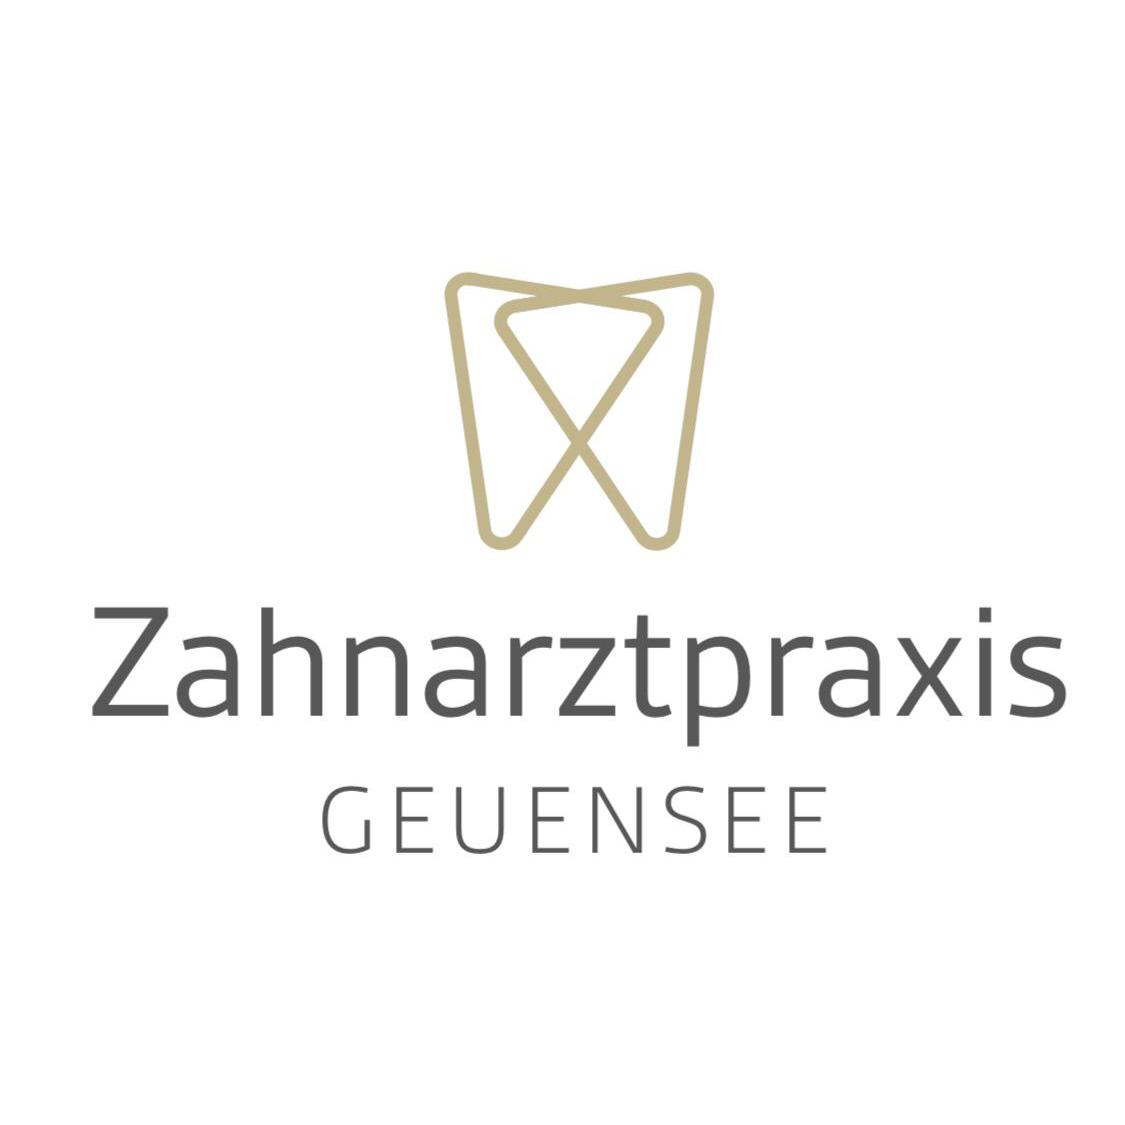 Zahnarztpraxis Geuensee AG Logo